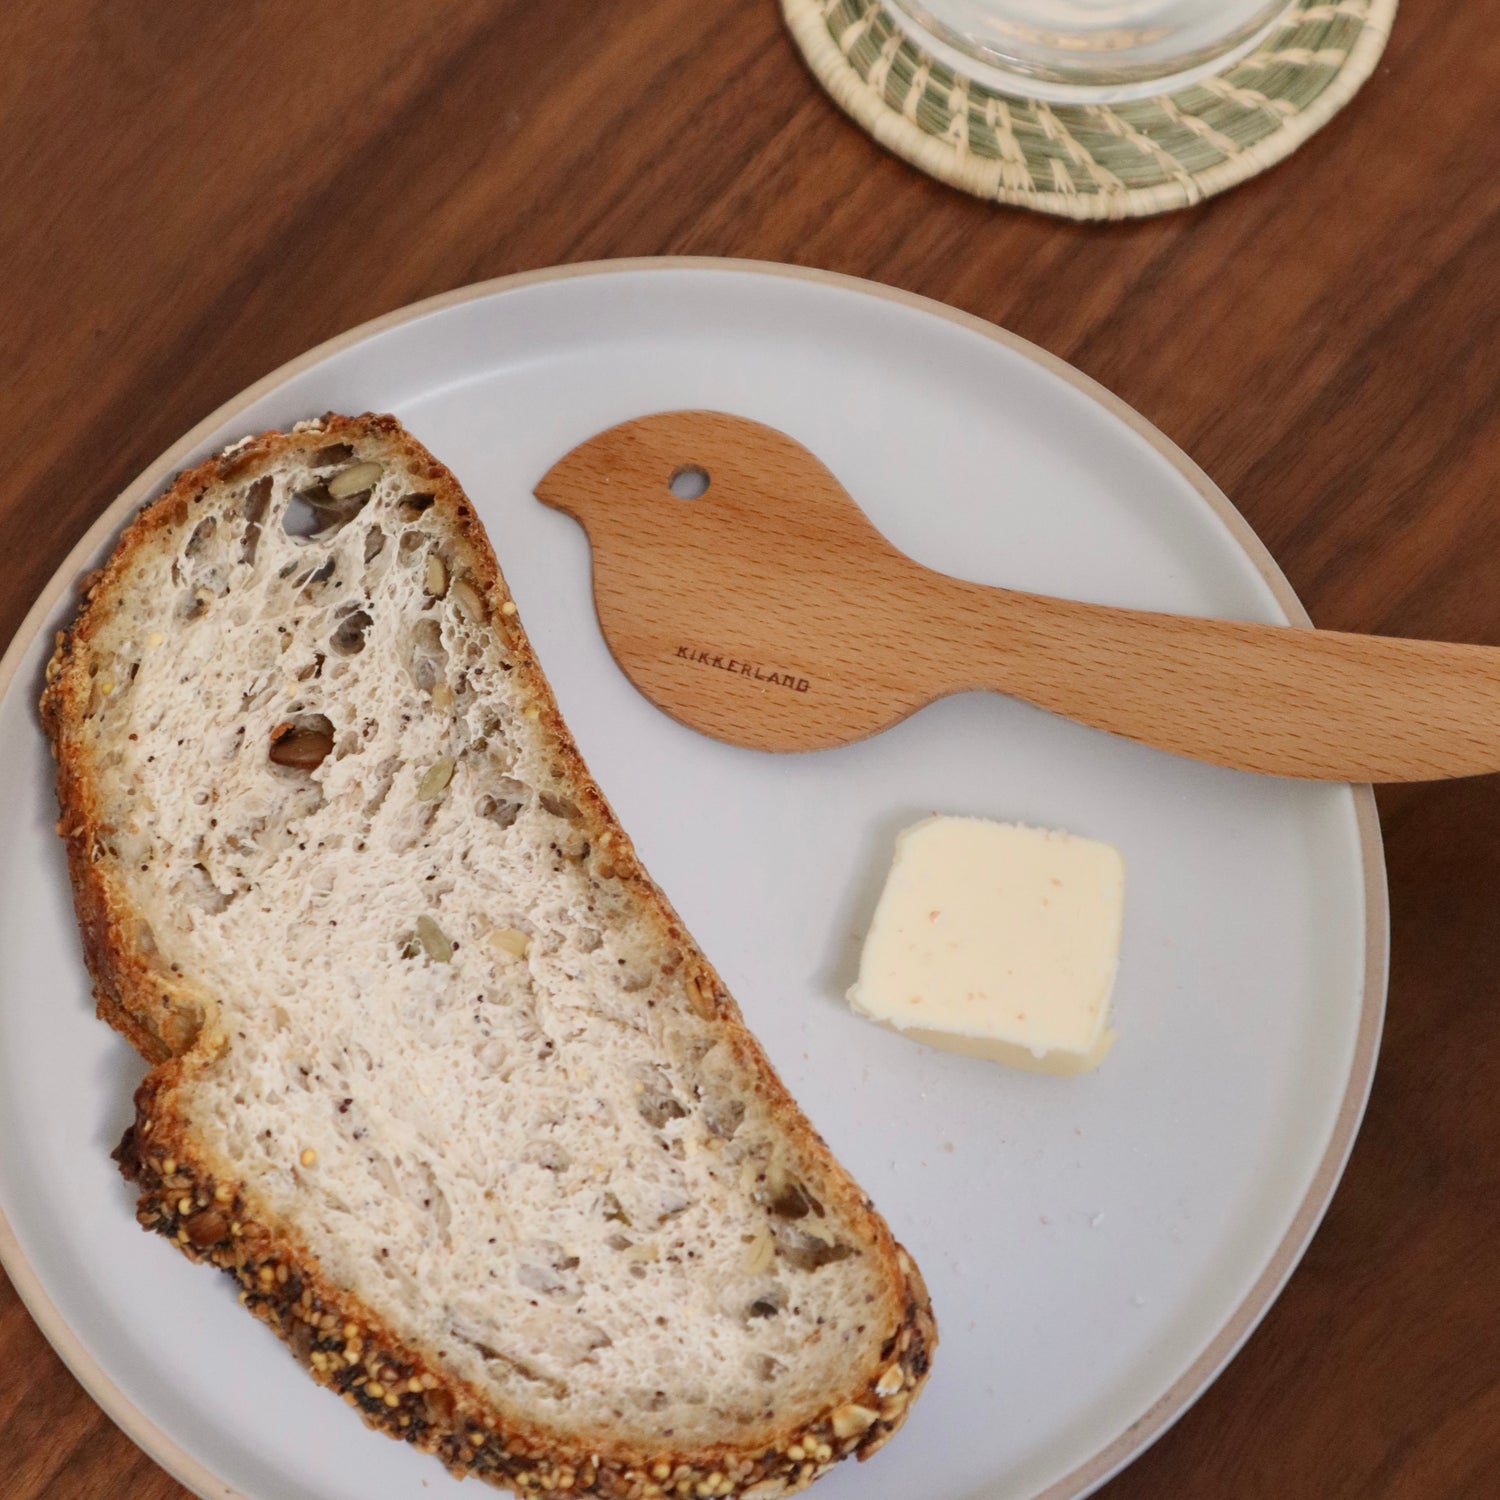 Couteau à beurre arrondi en bois pour pâte à modeler - Redecker